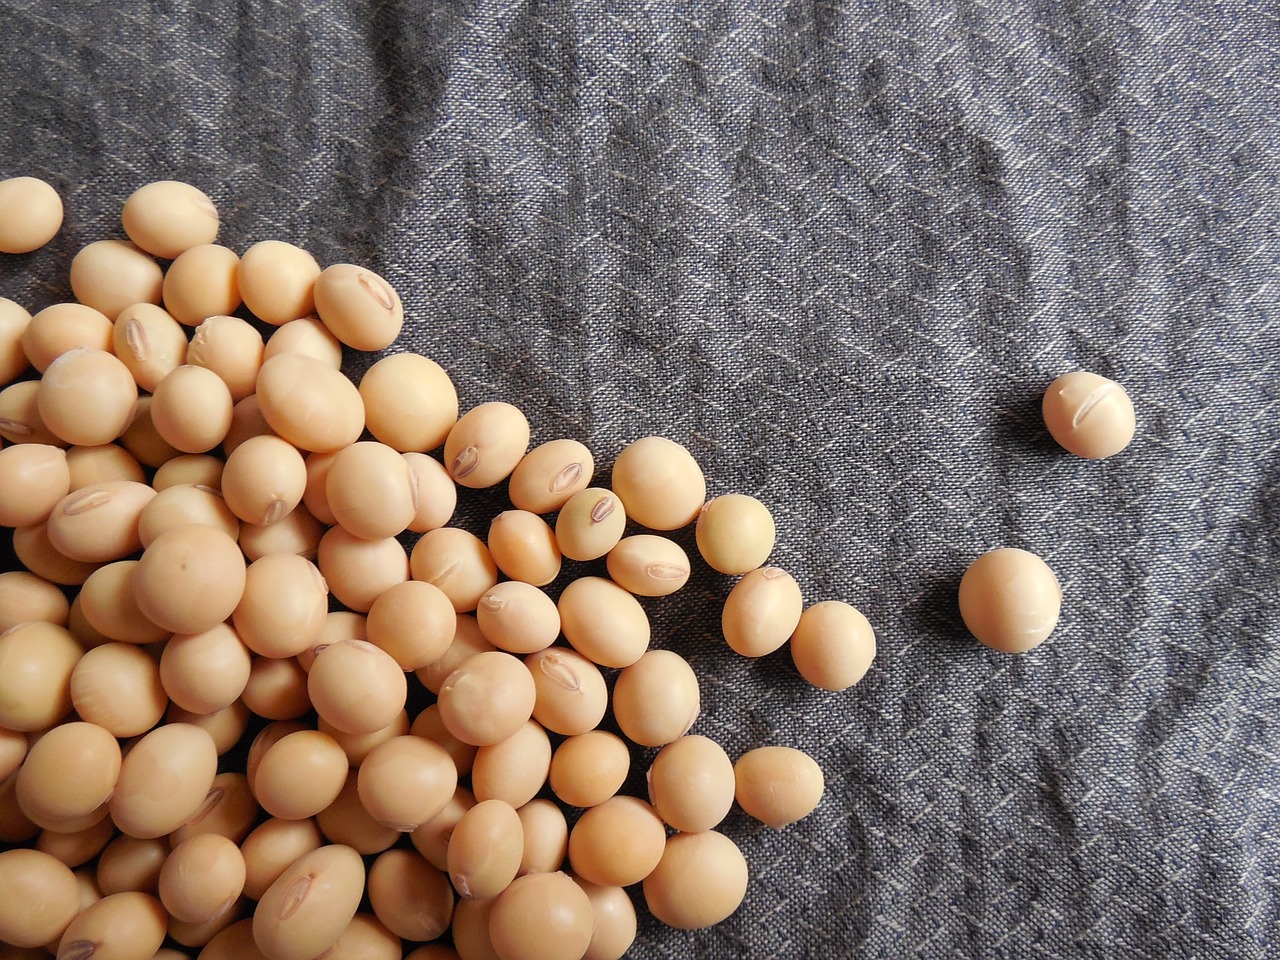 soybeans-182295_1280.jpg